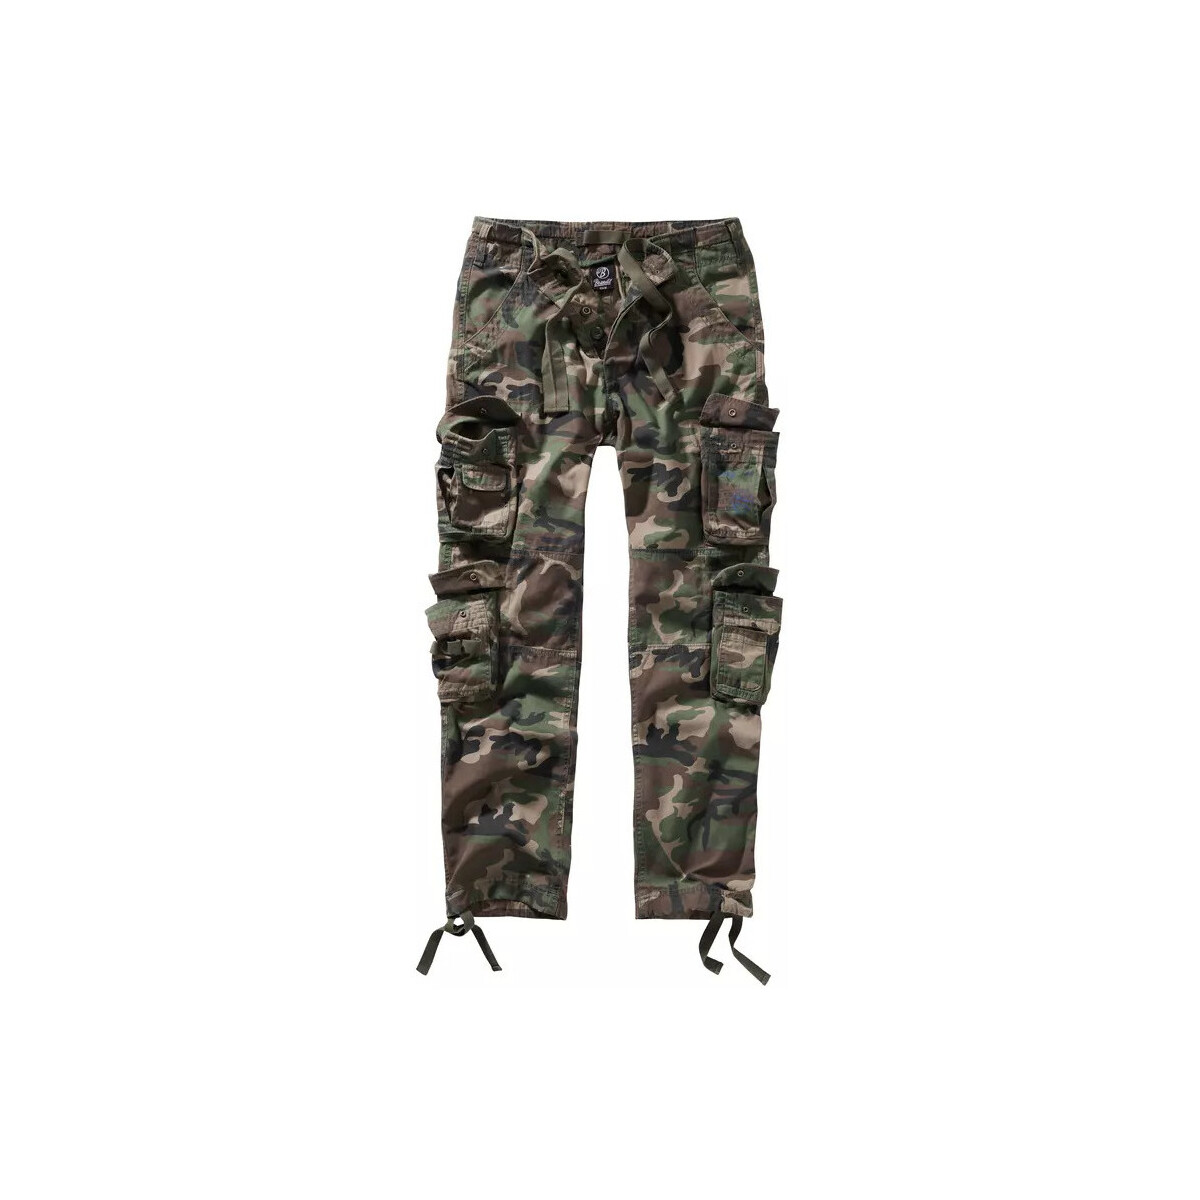 Textiel Heren Broeken / Pantalons Brandit Leger cargobroek  Pure slim fit Multicolour